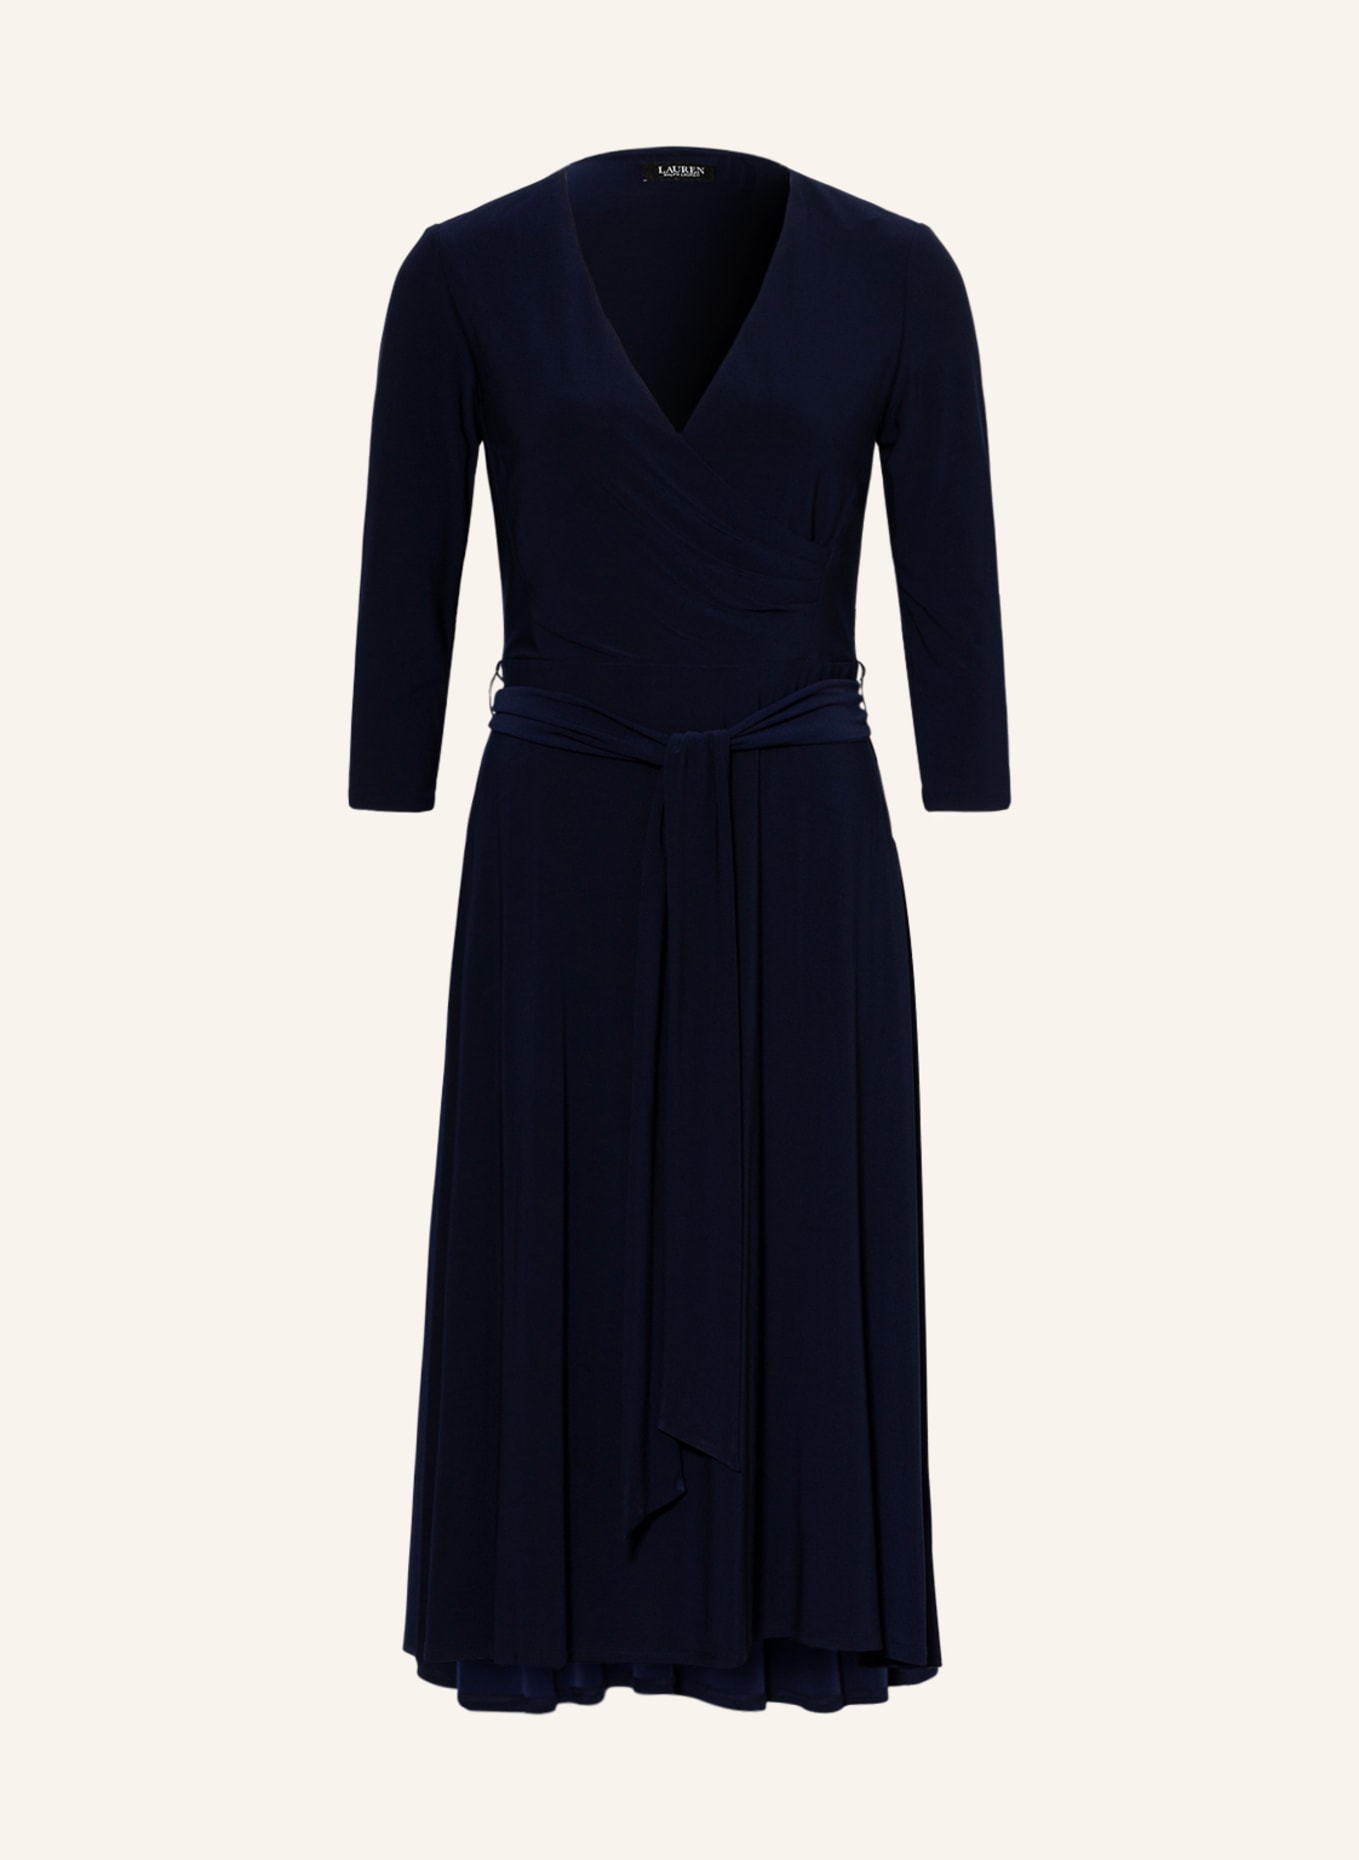 LAUREN RALPH LAUREN Dress with 3/4 sleeves, Color: DARK BLUE (Image 1)